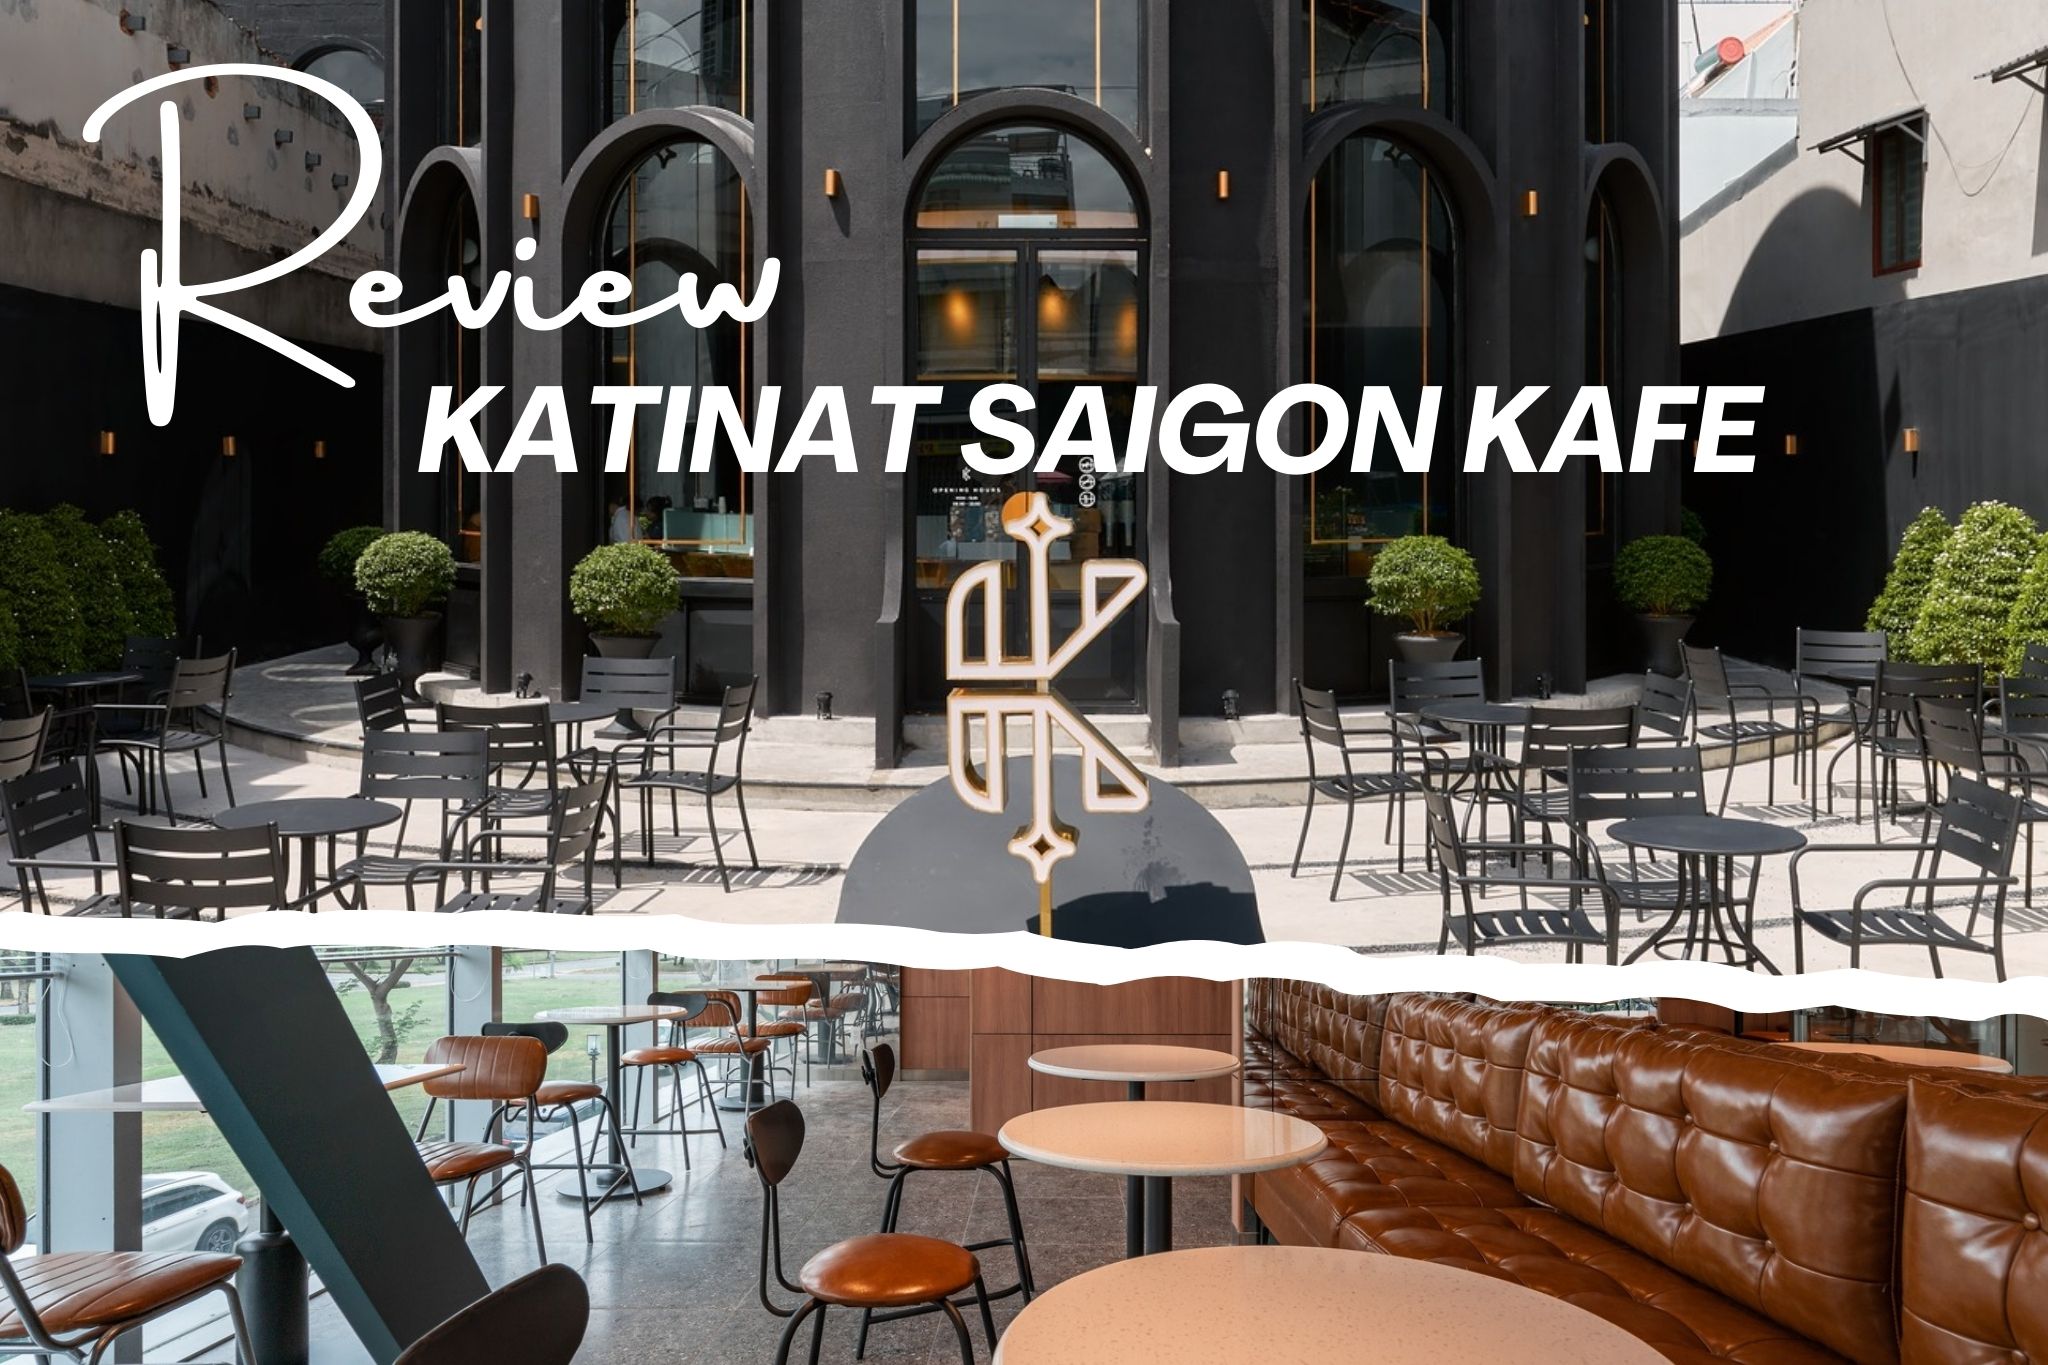 Review Thiết kế Katinat Saigon Kafe - Khác biệt tạo nên thương hiệu trendy